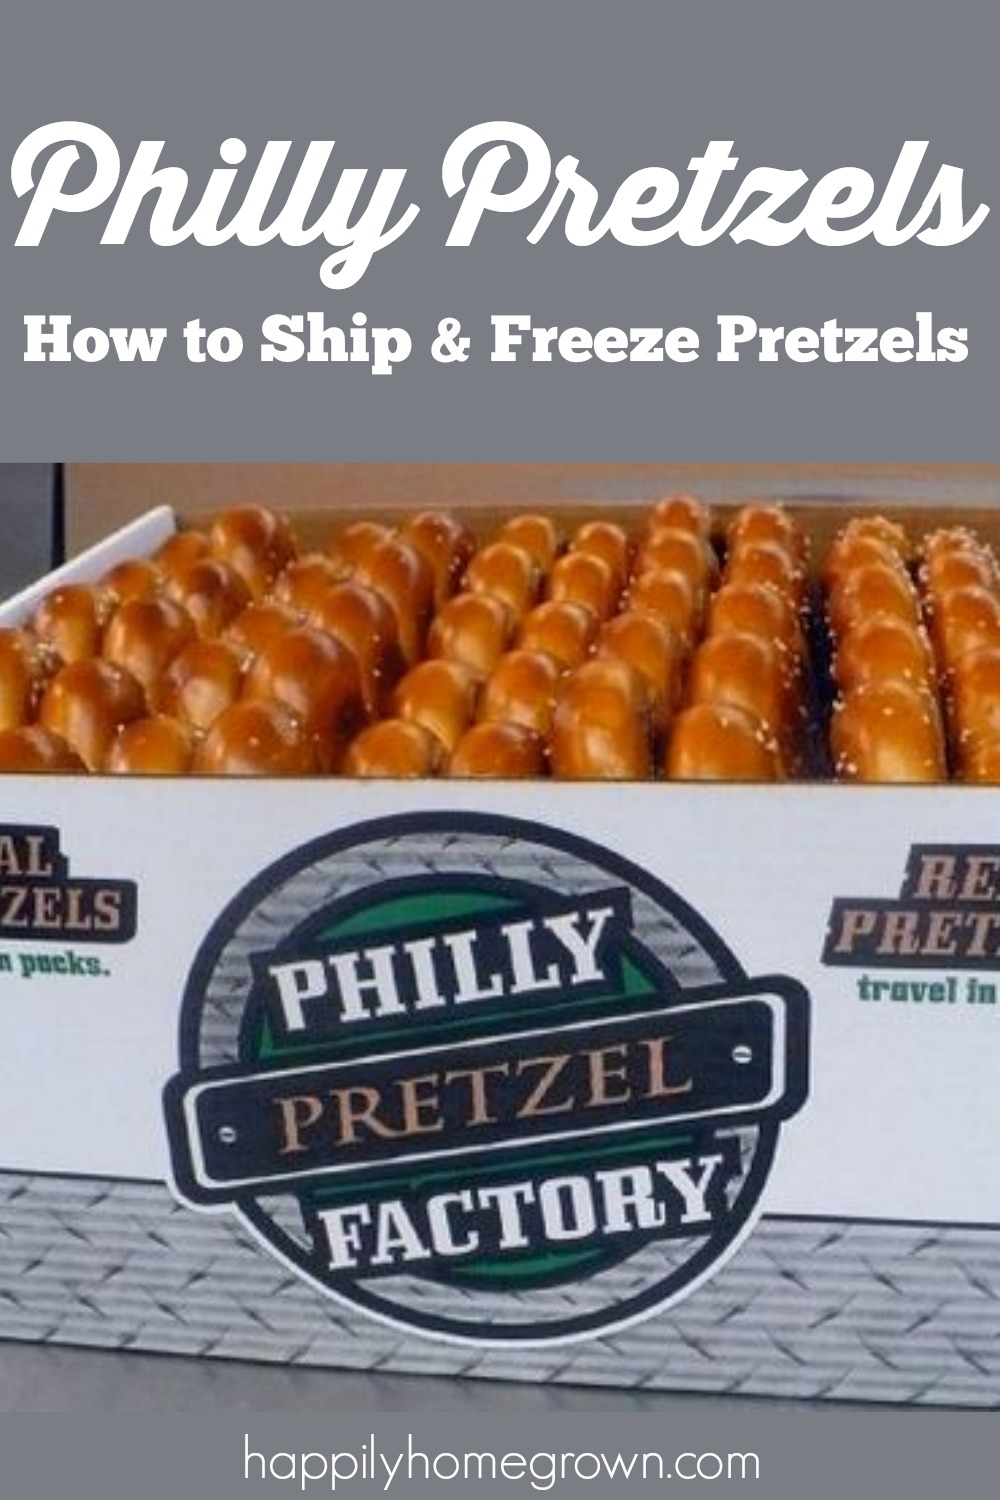 philly pretzel, philadelphia pretzel, pretzels,